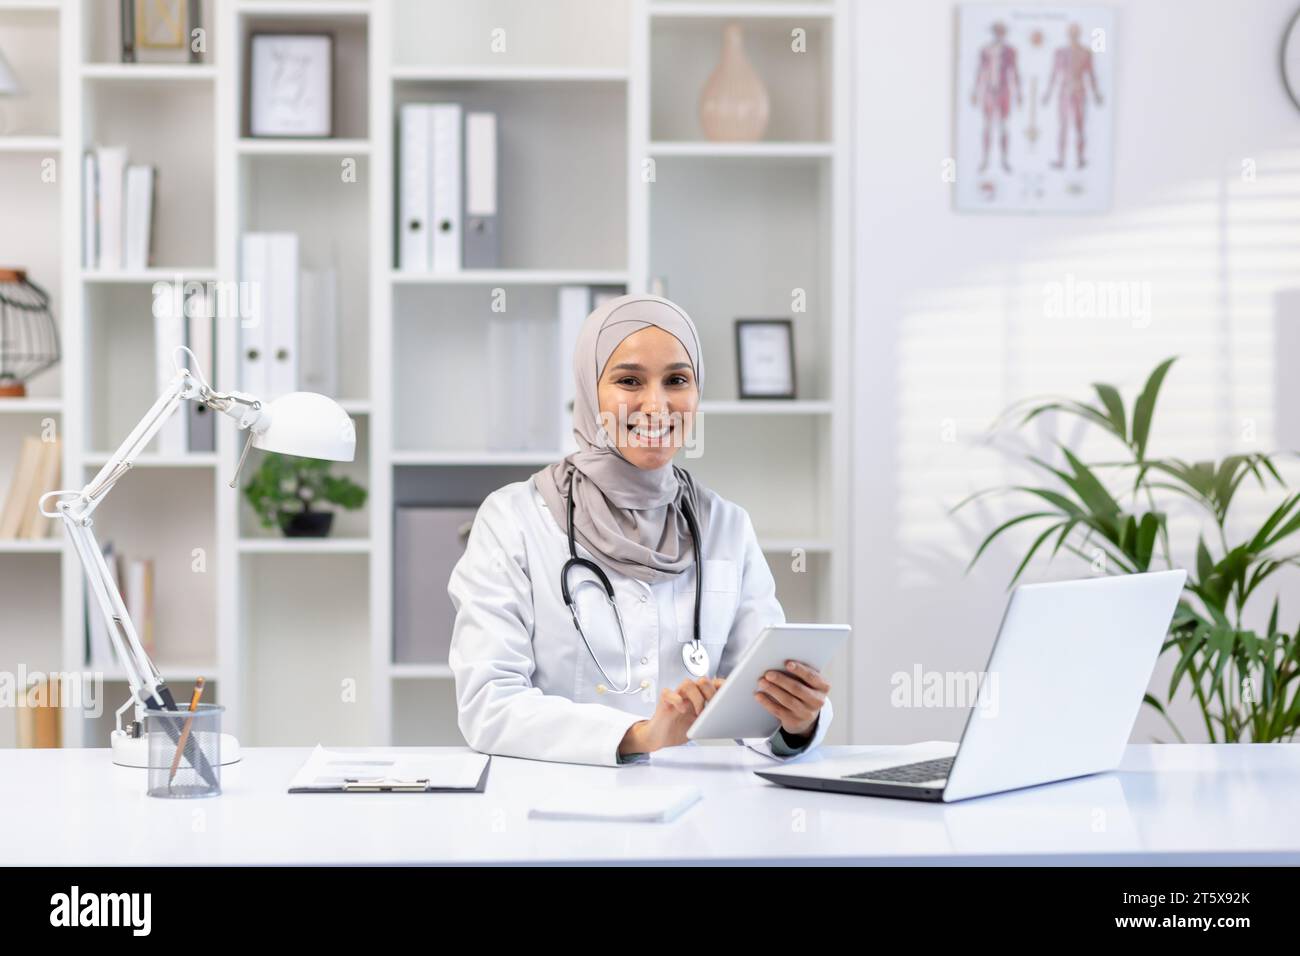 Portrait de femme médecin musulmane dans le hijab, femme médecin avec un ordinateur tablette regardant la caméra avec le sourire, travaillant à l'intérieur du cabinet médical, portant un manteau médical blanc, assis à table avec un ordinateur portable. Banque D'Images